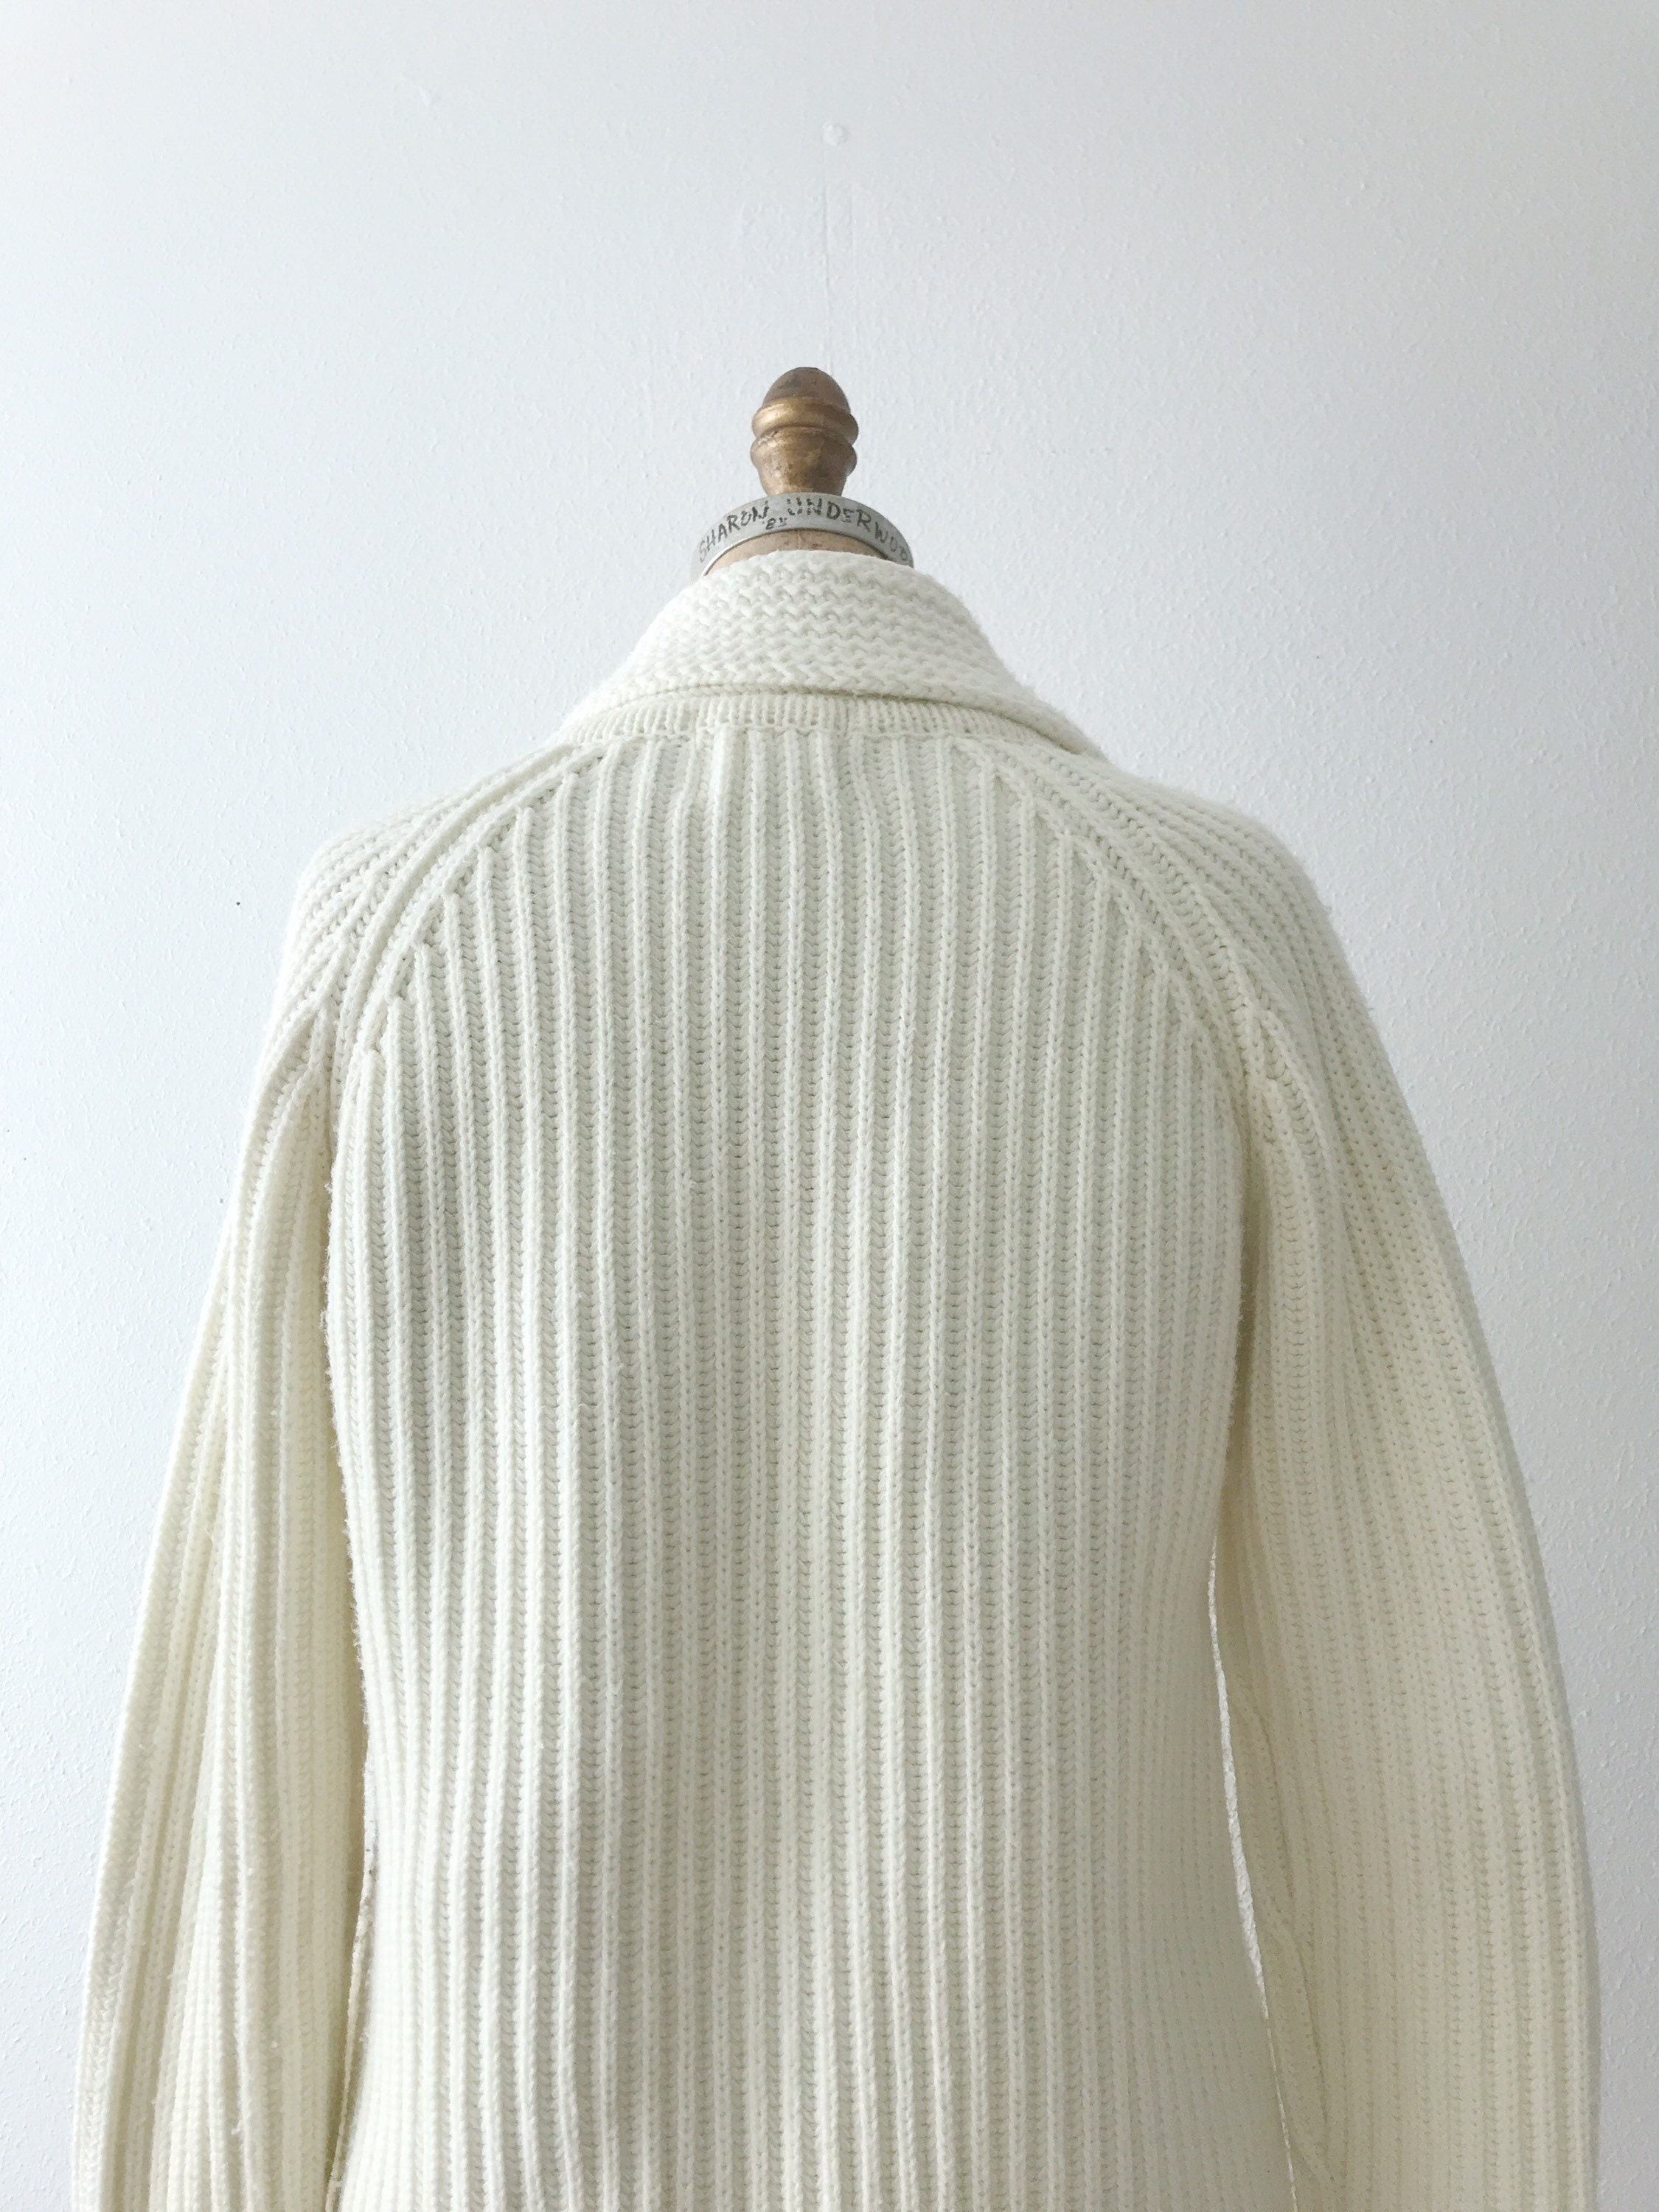 Shawl Collar sweater / fishermans cardigan / cream knit cardigan